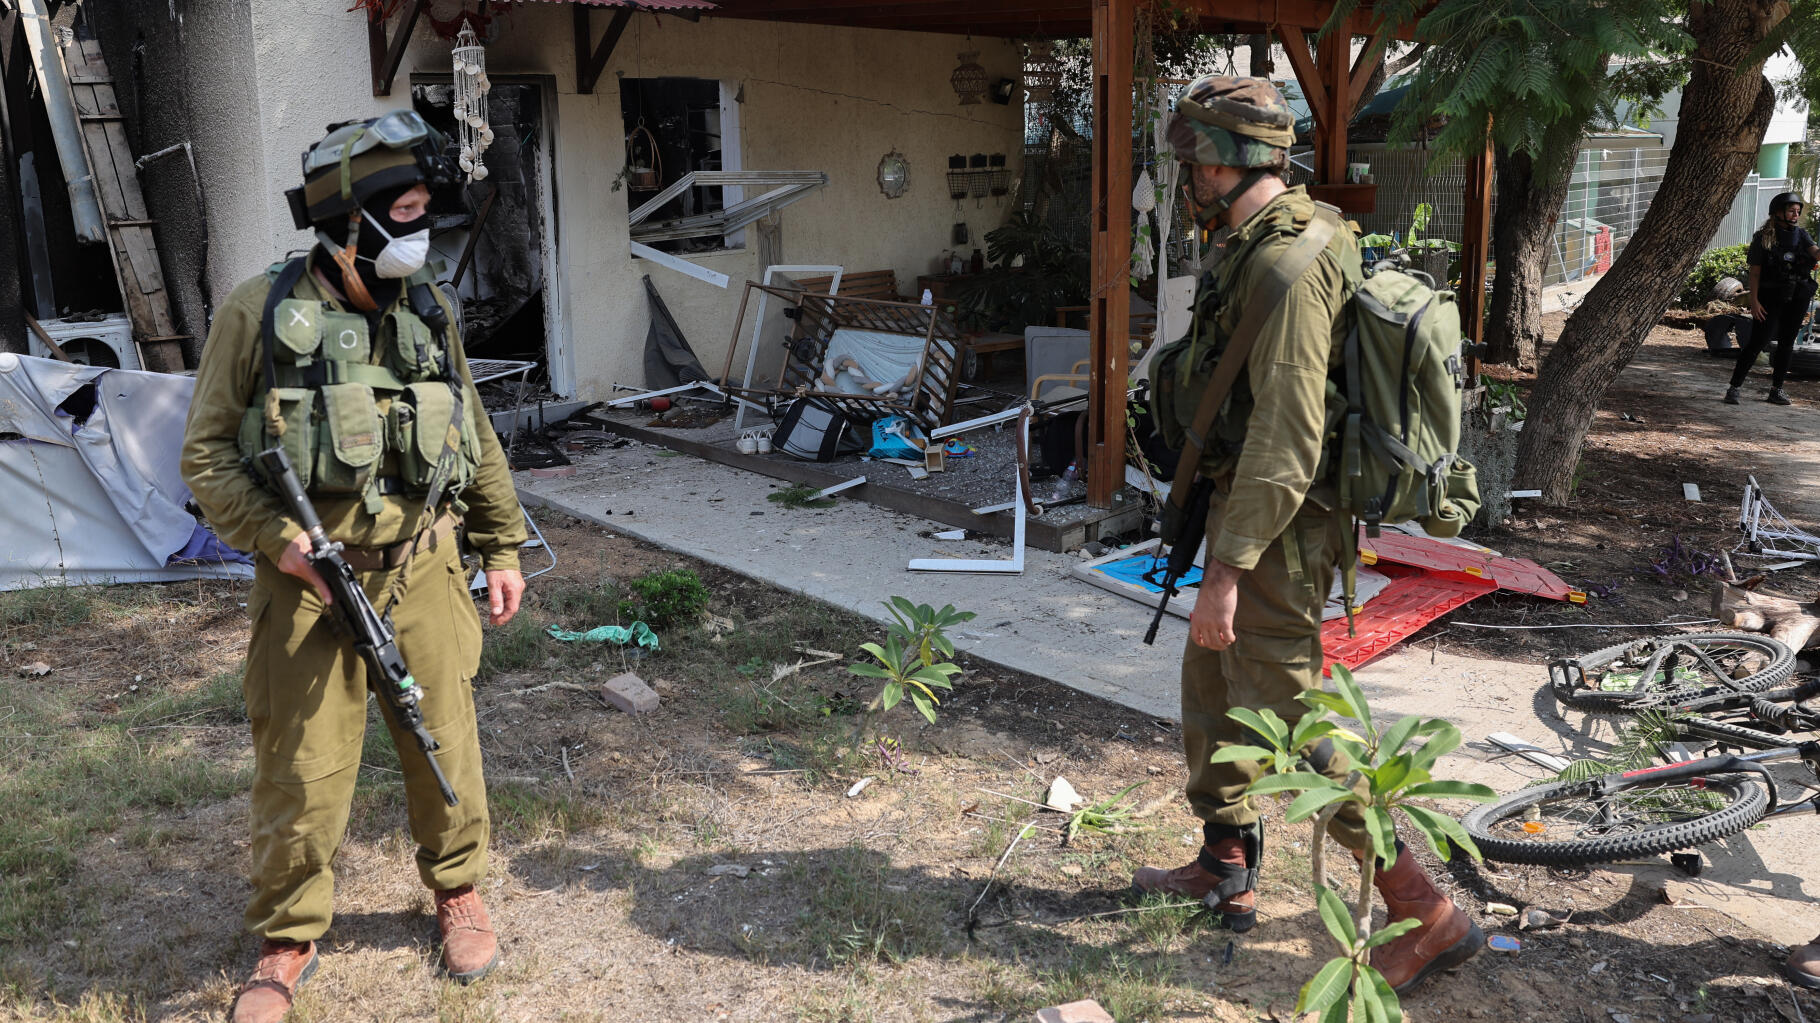 Bebe Attaques du Hamas contre Israël : au kibboutz de Kfar Aza, découverte d’un charnier de civils